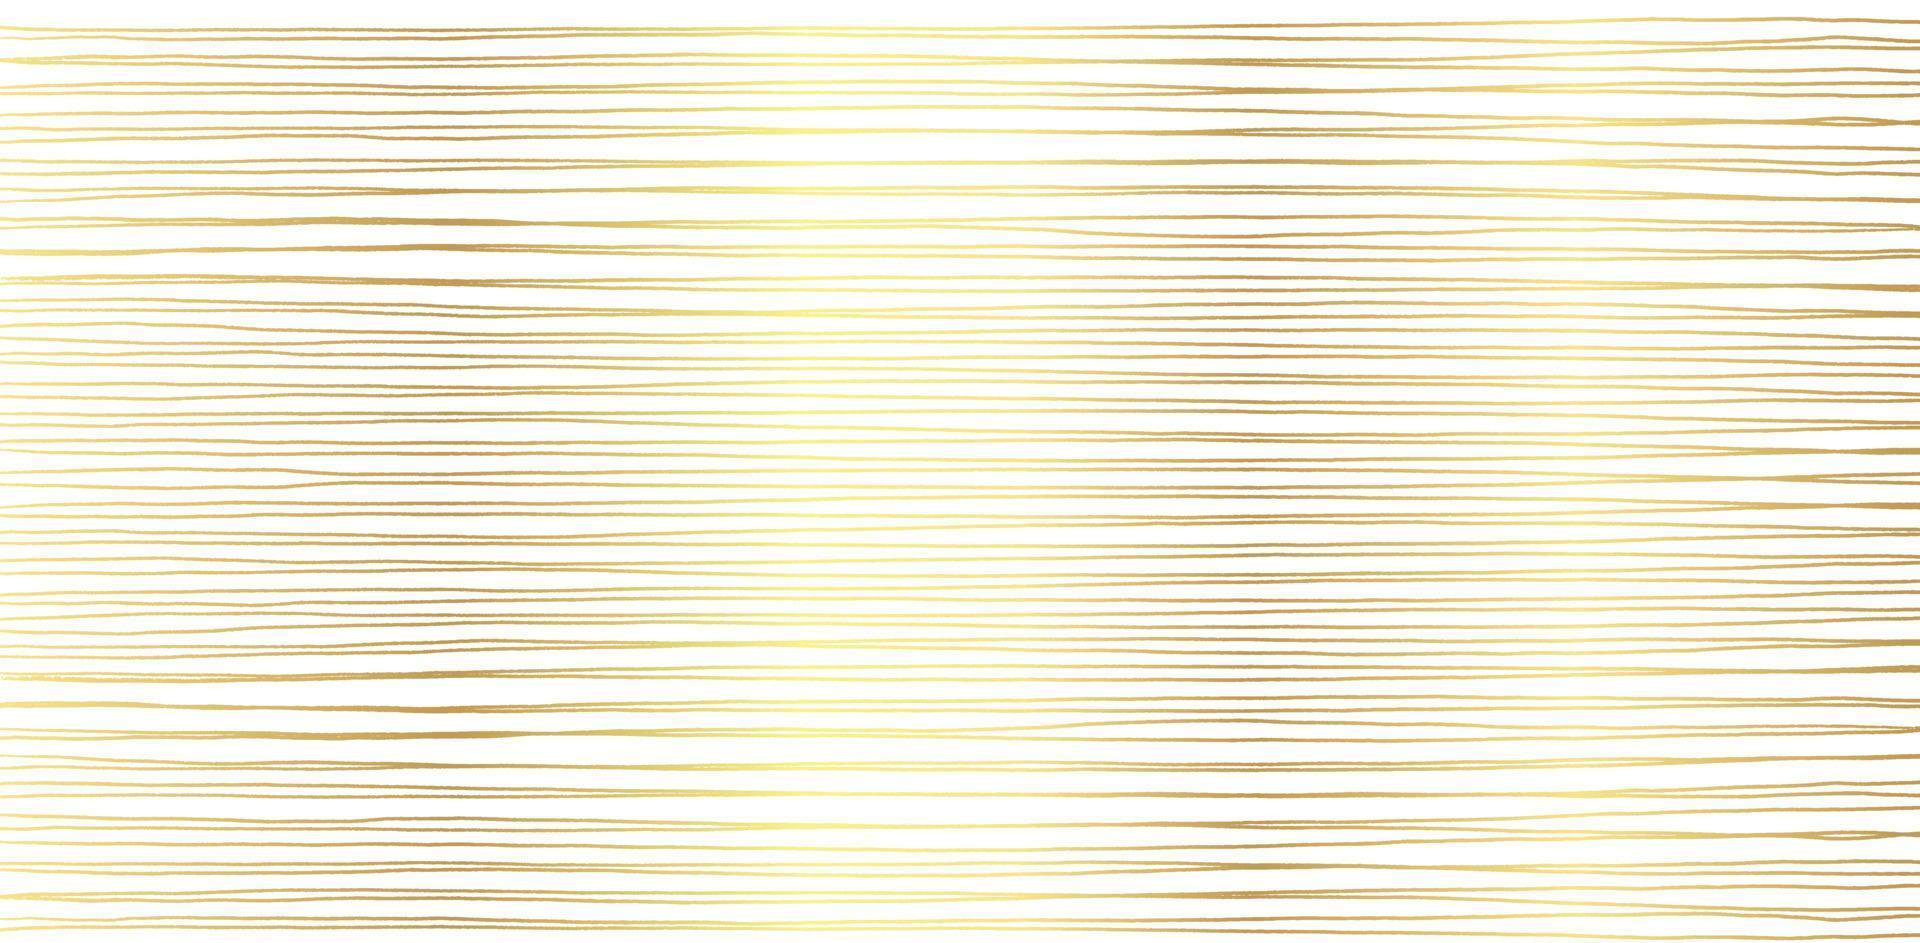 patrón abstracto dibujado a mano con líneas doradas dibujadas a mano, trazos. conjunto de pinceles de grunge de vector. rayas onduladas, ilustración vectorial eps 10 vector